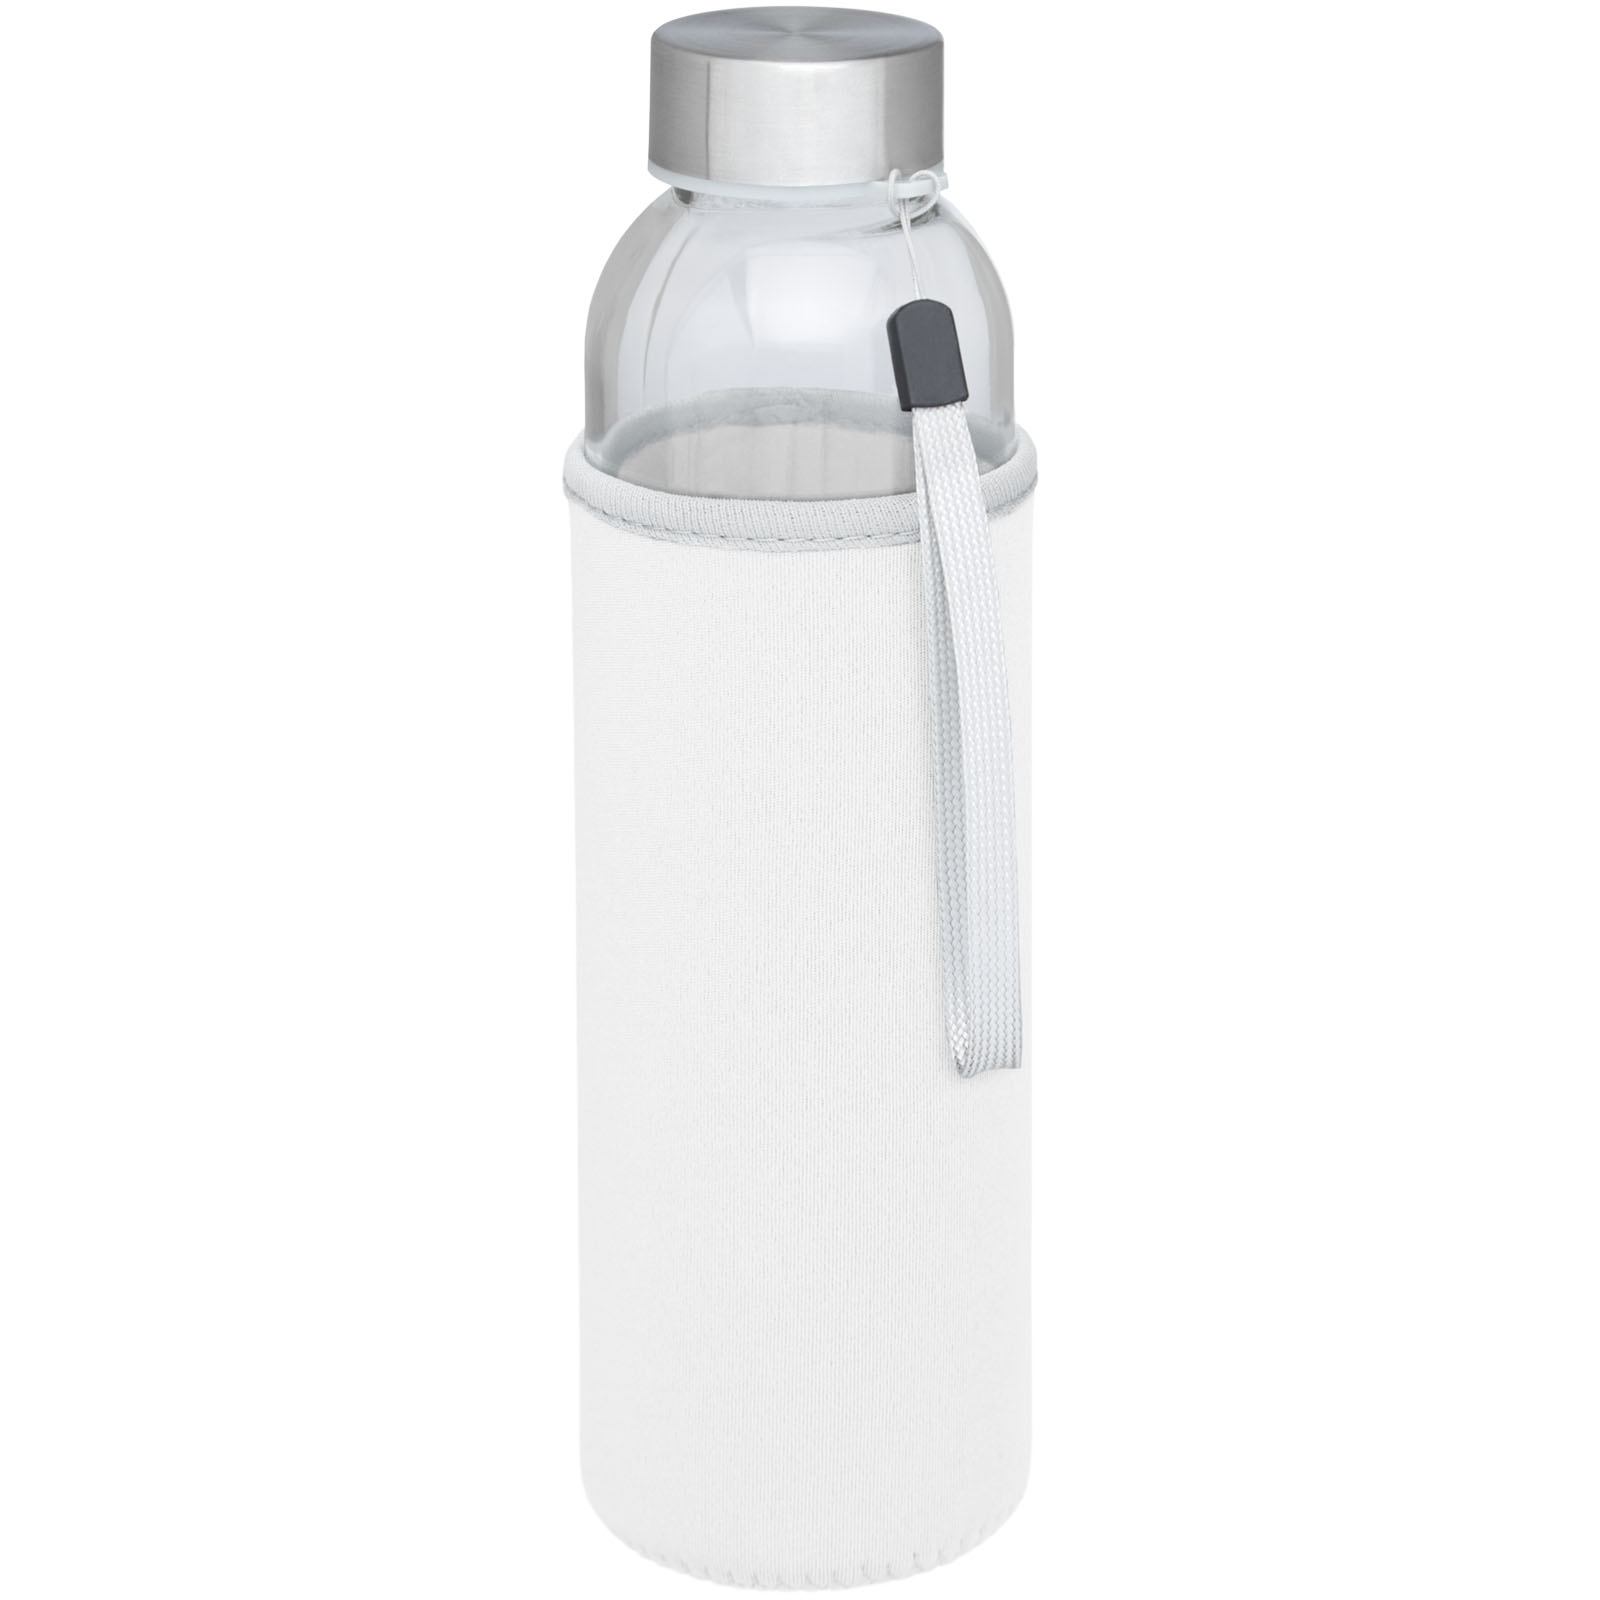 Drinkware - Bodhi 500 ml glass water bottle